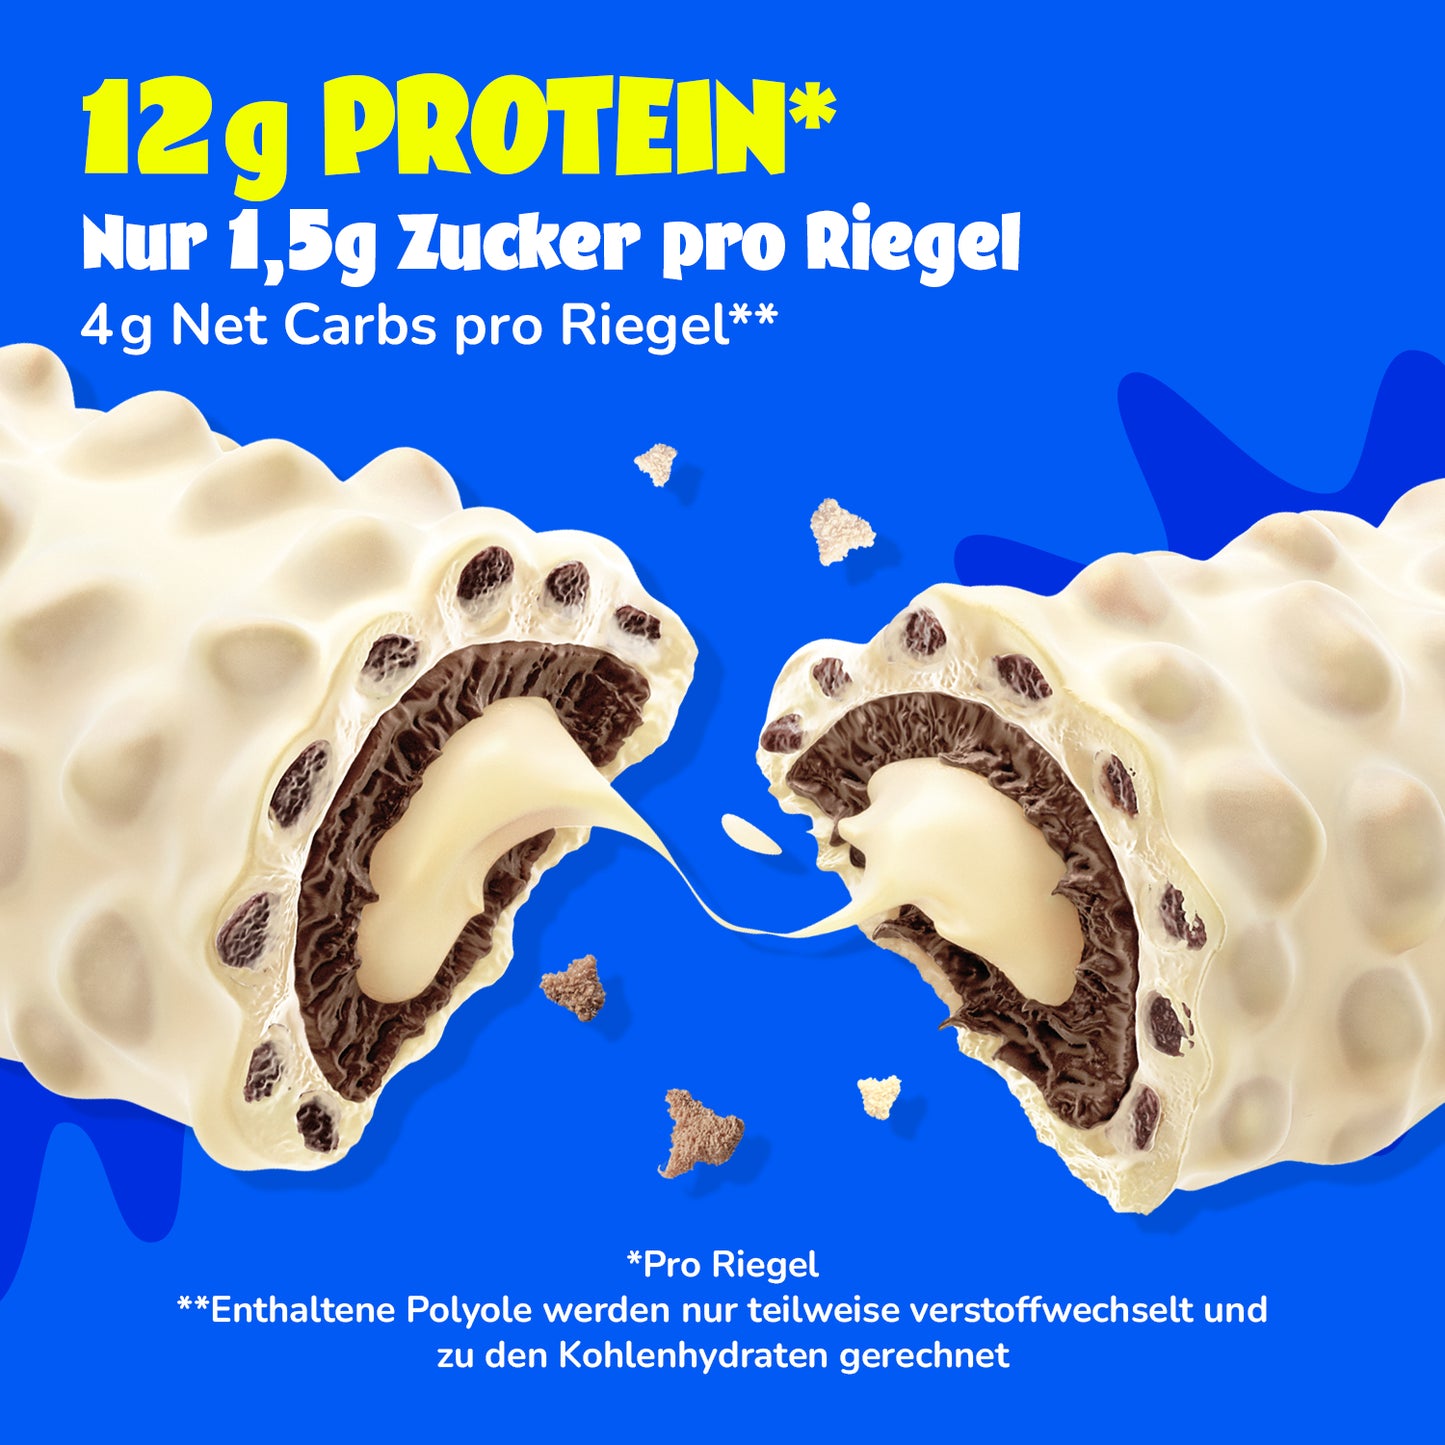 Protein savings package